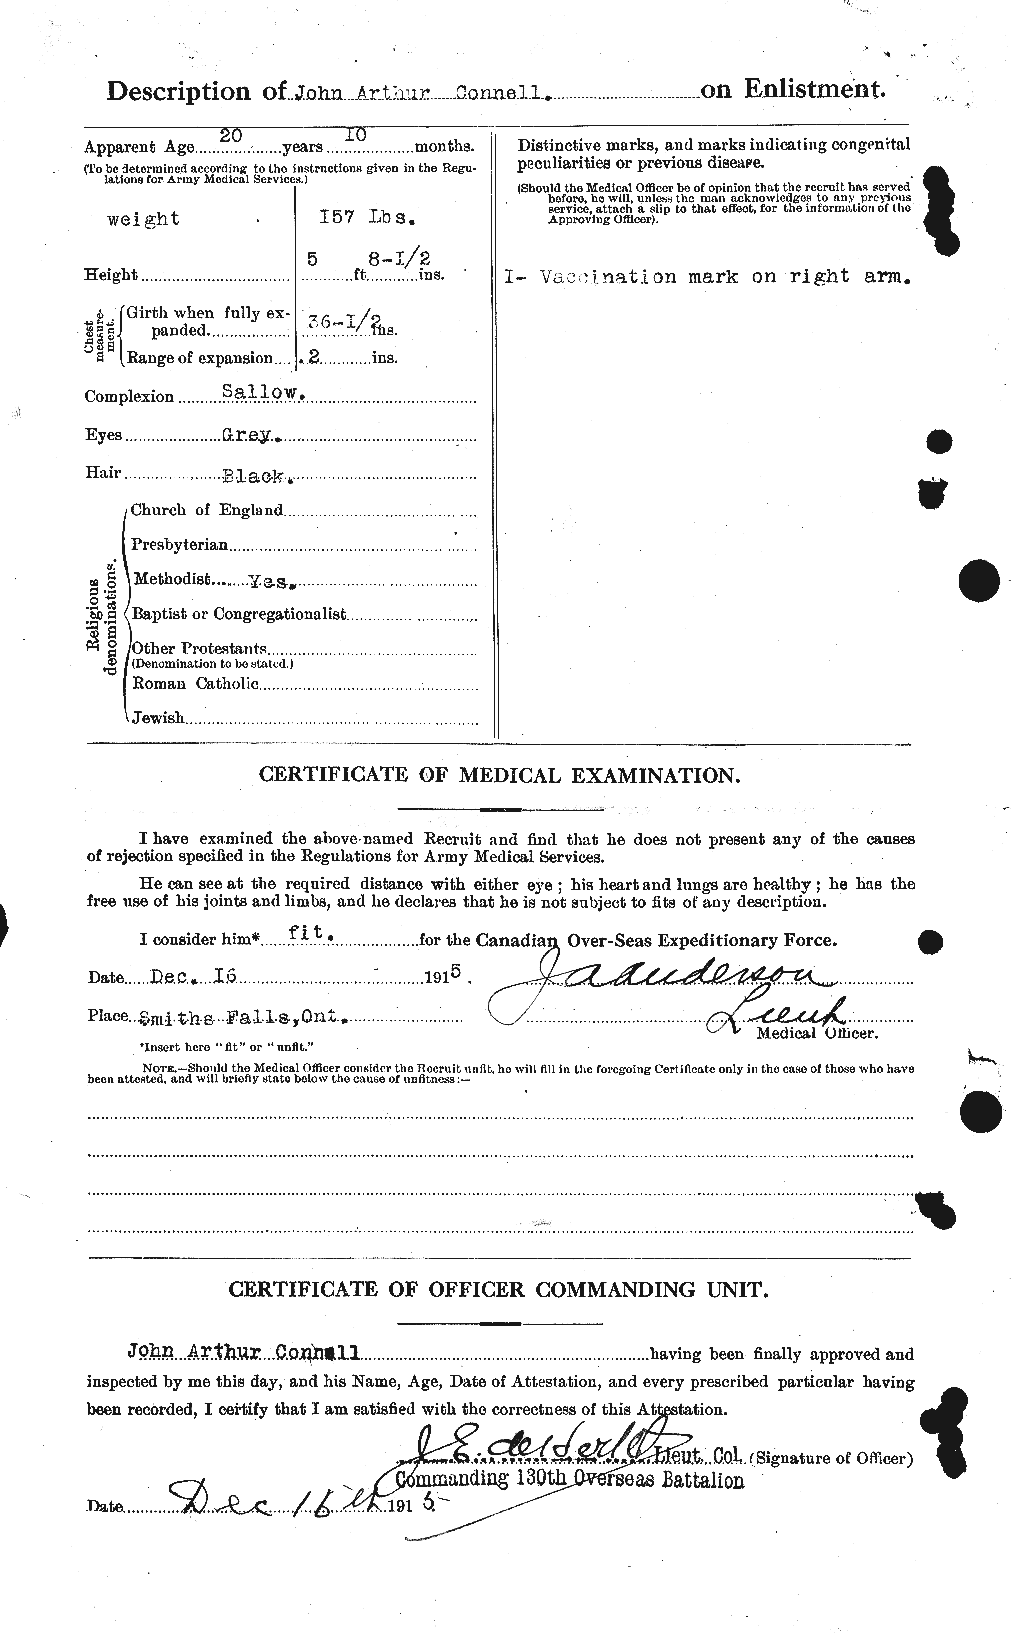 Dossiers du Personnel de la Première Guerre mondiale - CEC 069612b